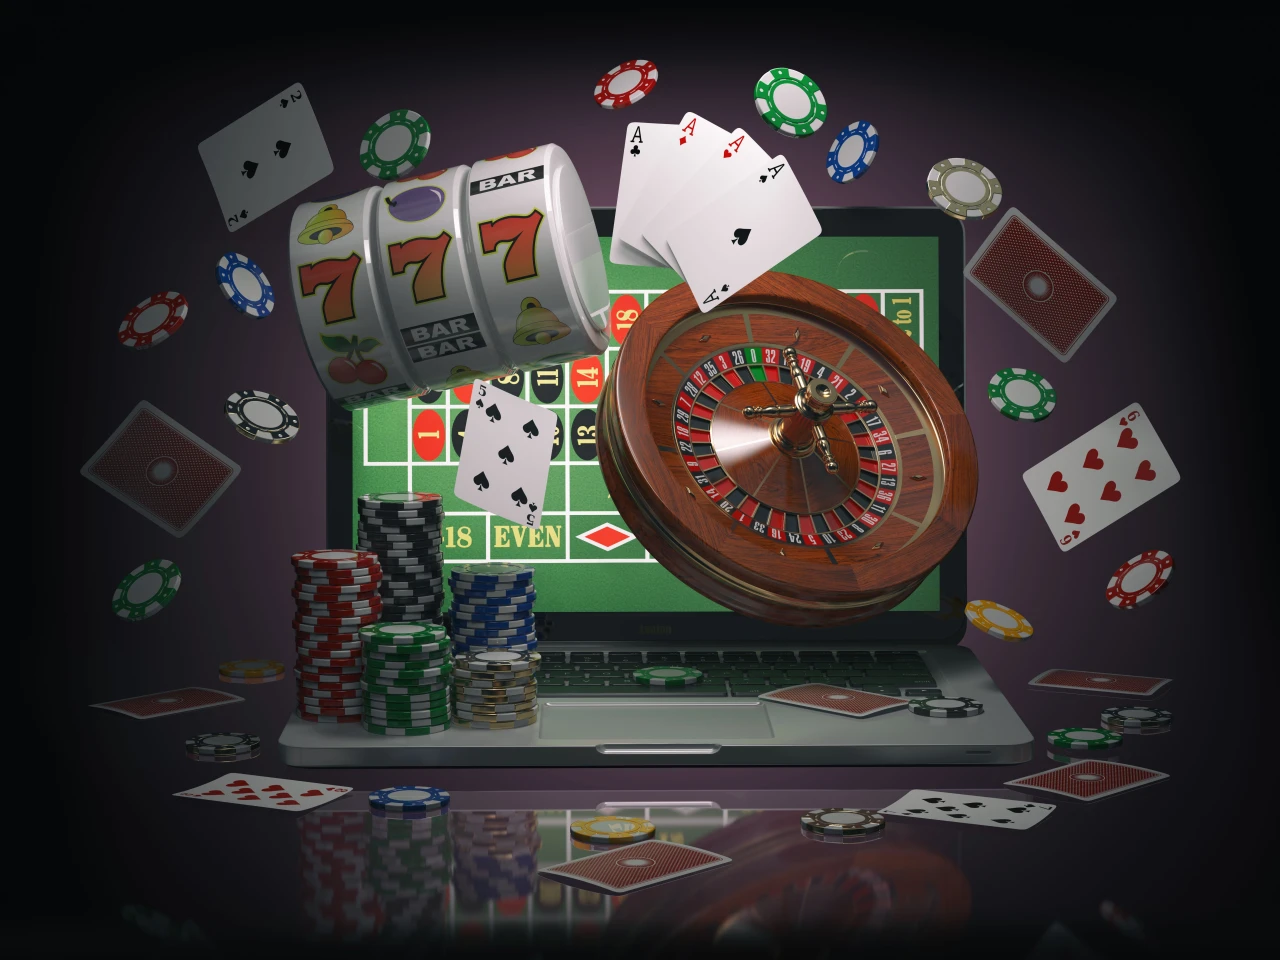 Verschillende gokbenodigdheden zoals een roulettetafel, gokkaarten, fiches en een laptop.